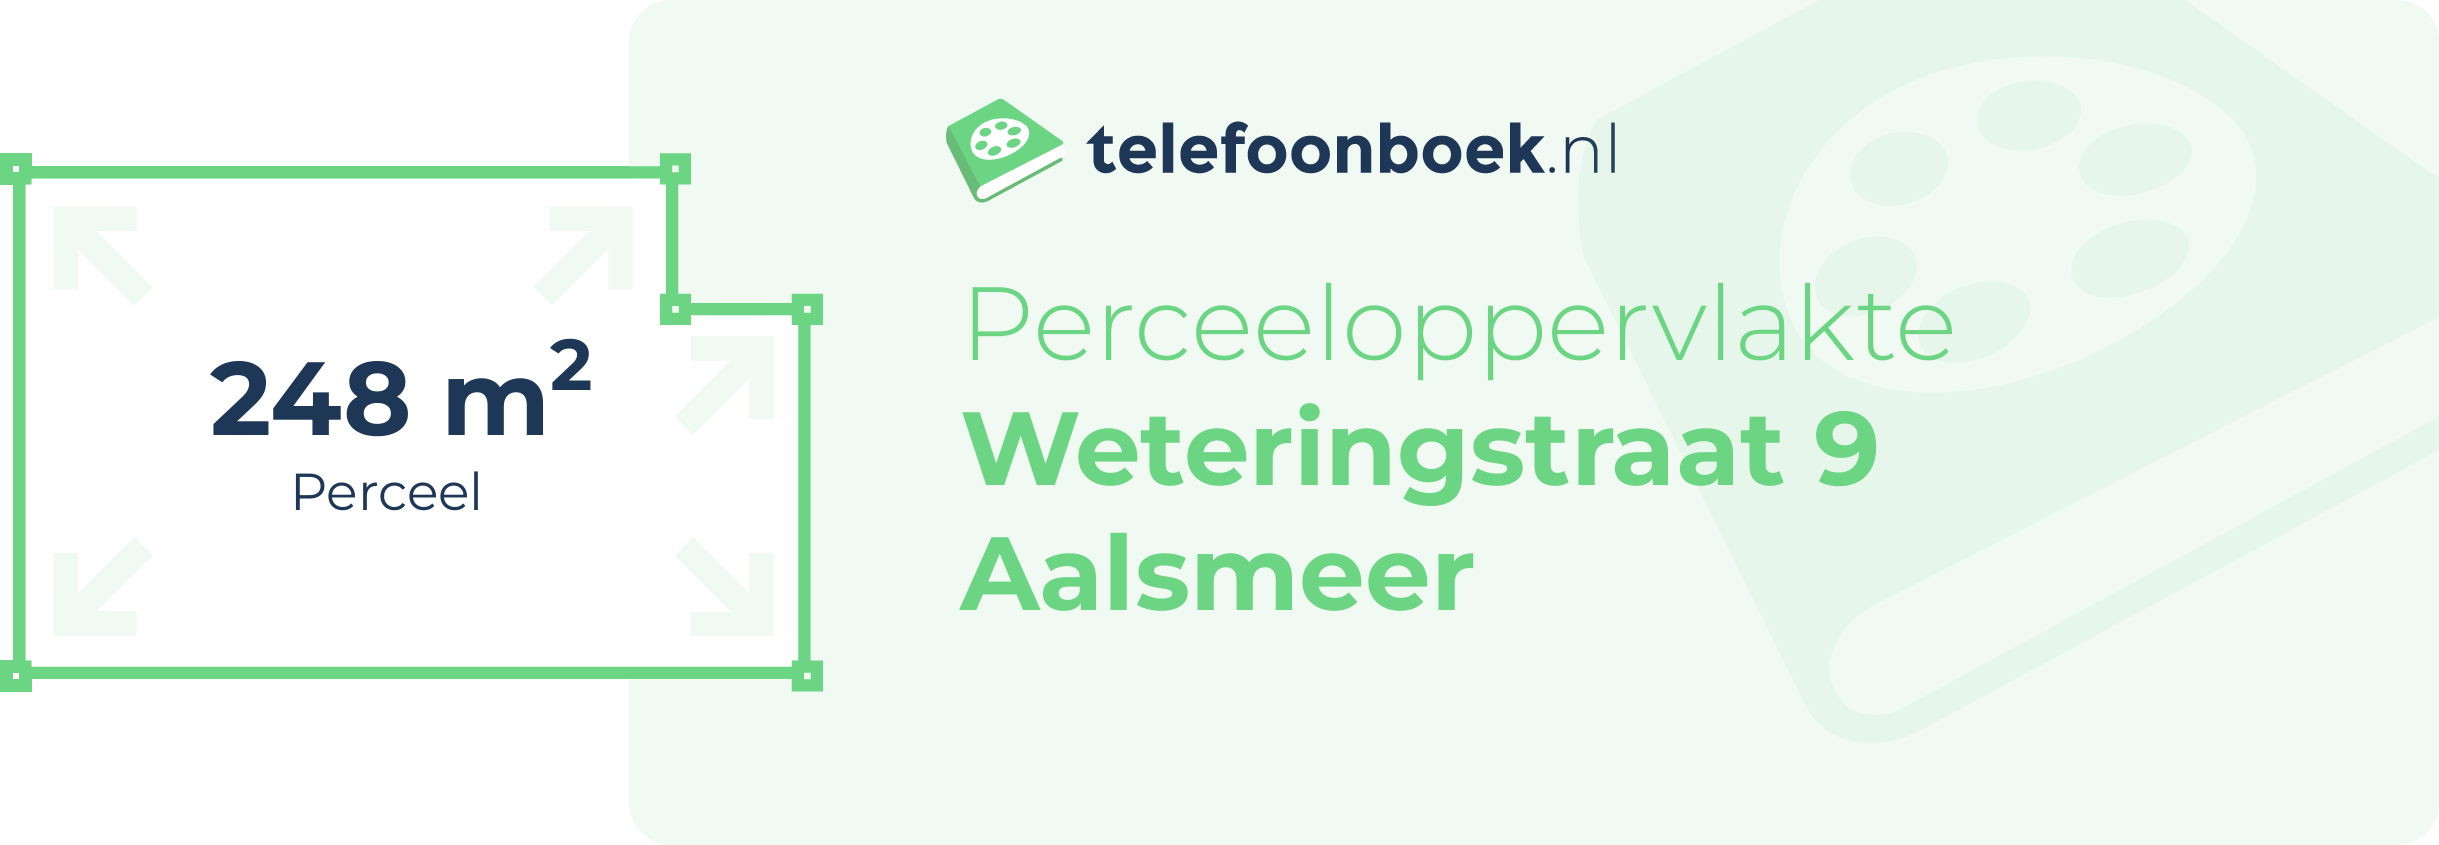 Perceeloppervlakte Weteringstraat 9 Aalsmeer